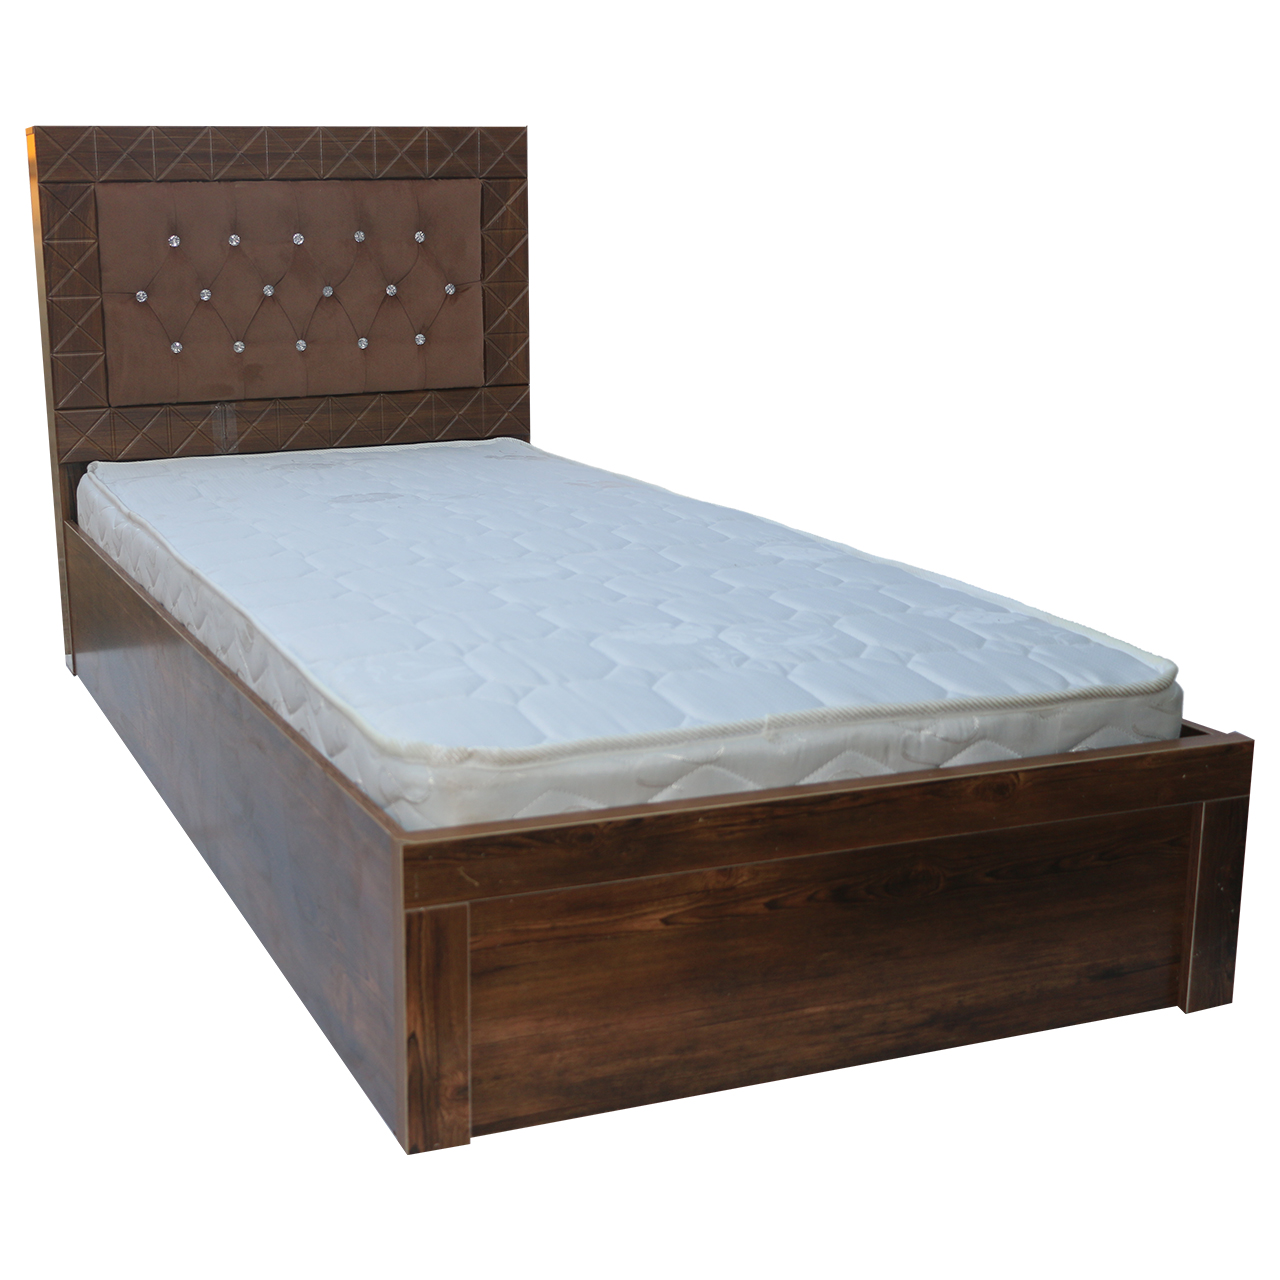 تخت خواب یکنفره مدل Tkt0002 سایز95×215سانتیمتر